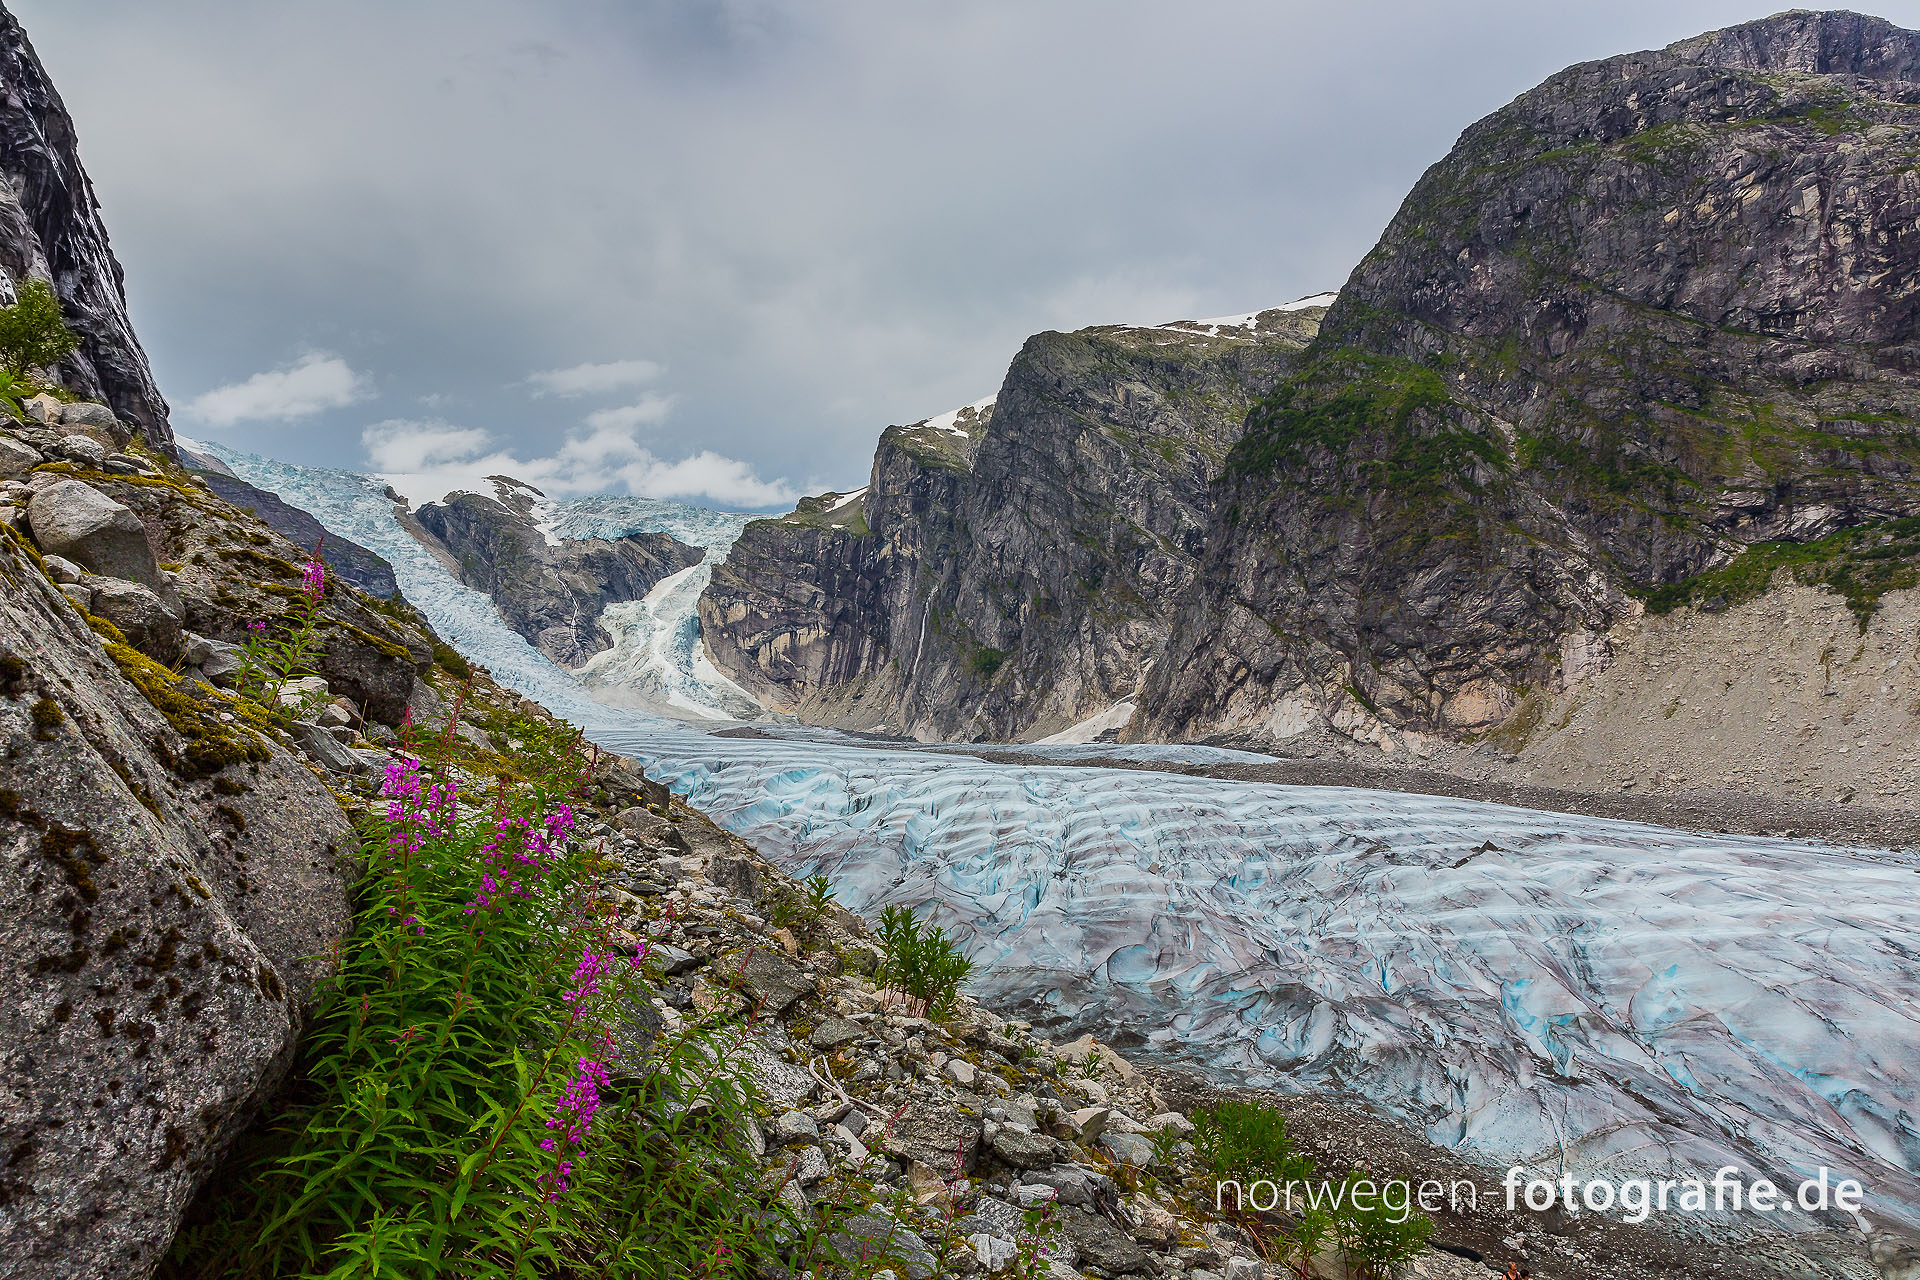 Bild von einem beeindruckenden Panorama mit den drei Gletscherbrüchen: Loke-, Odin-, und Torfgletscher aufgenommen in Norwegen